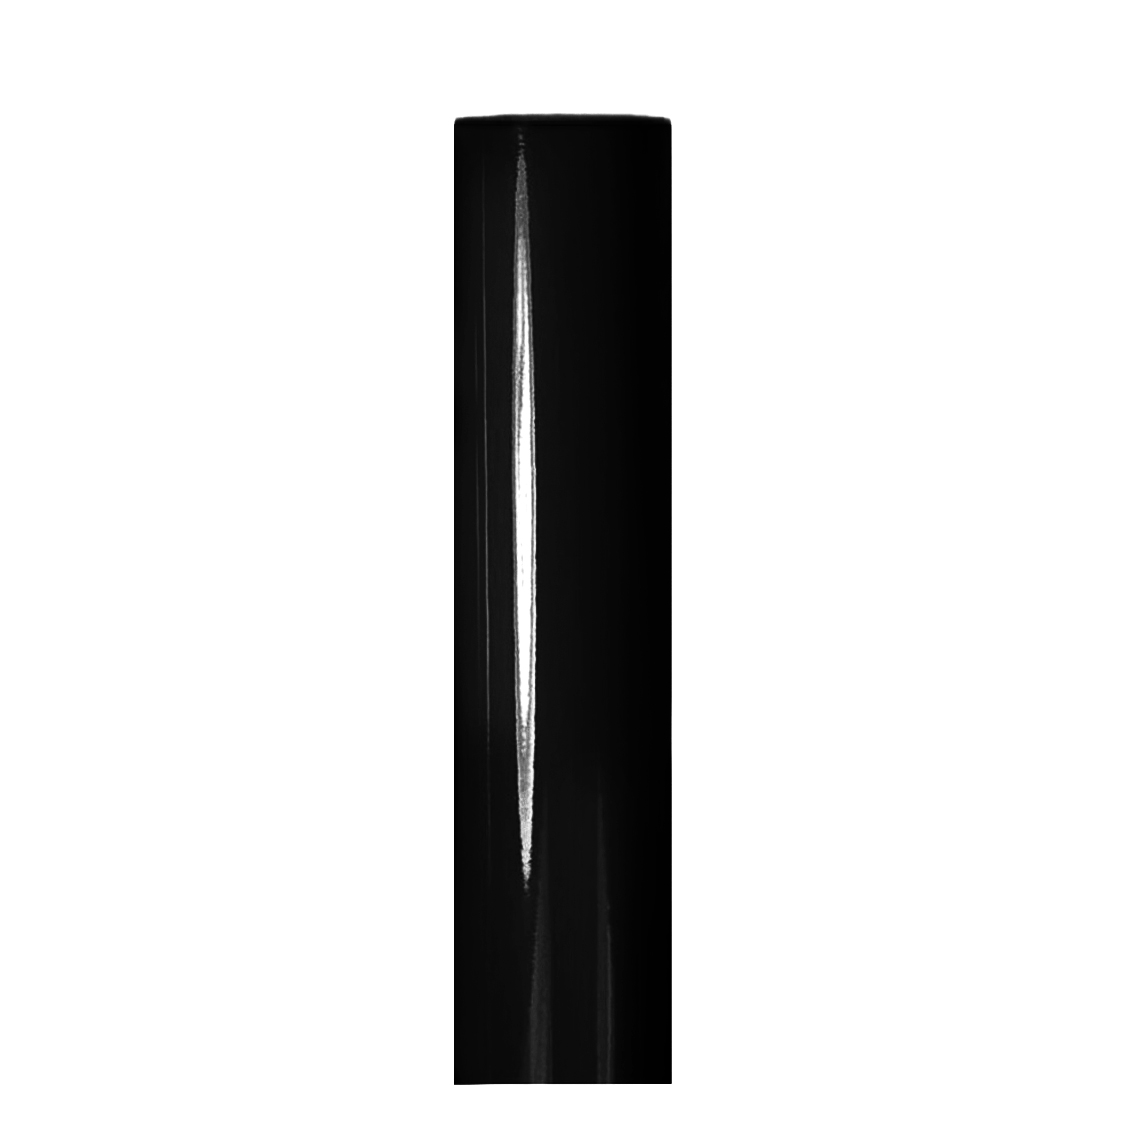 Vinilo Adhesivo Decorativo Negro Brillante 30cm x 1.0mt - IdeArte